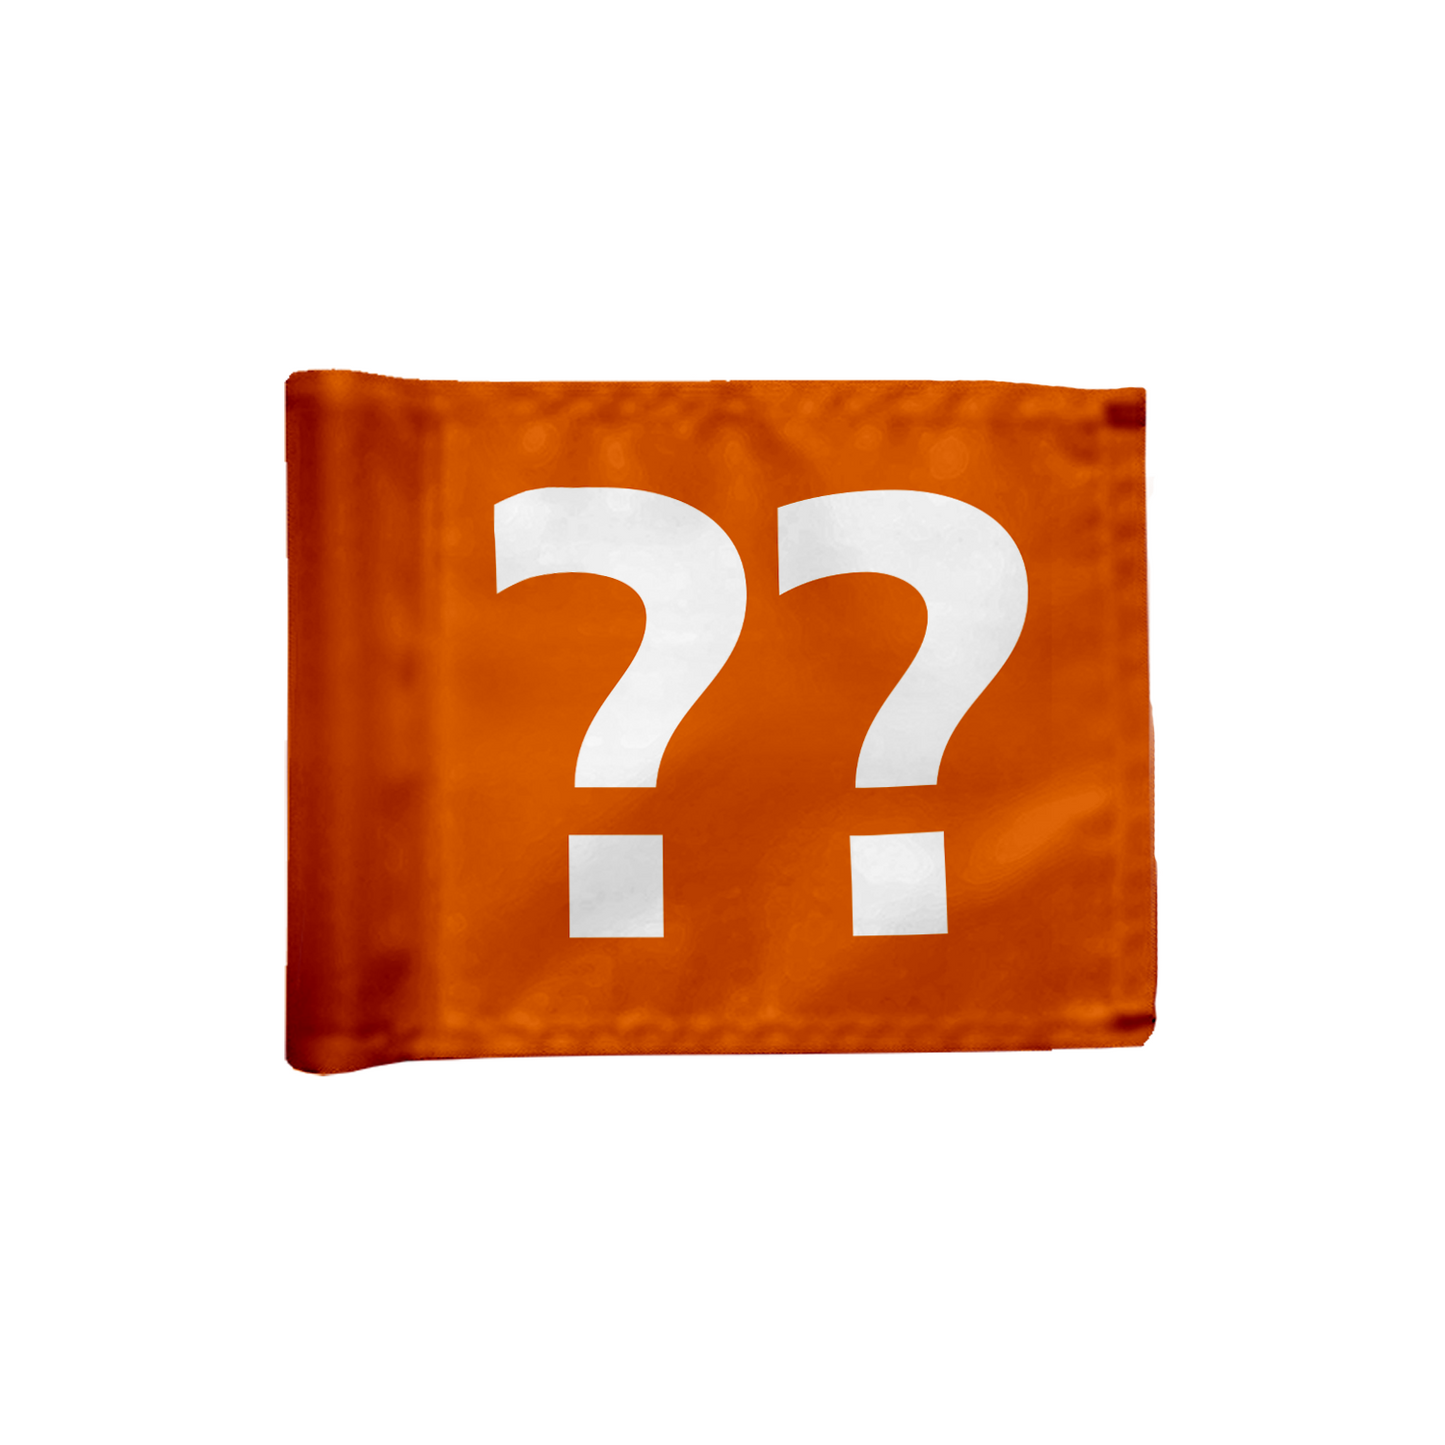 Stykvis puttinggreen flag enkeltsidet i orange med valgfrit hulnummer, 200 gram flagdug